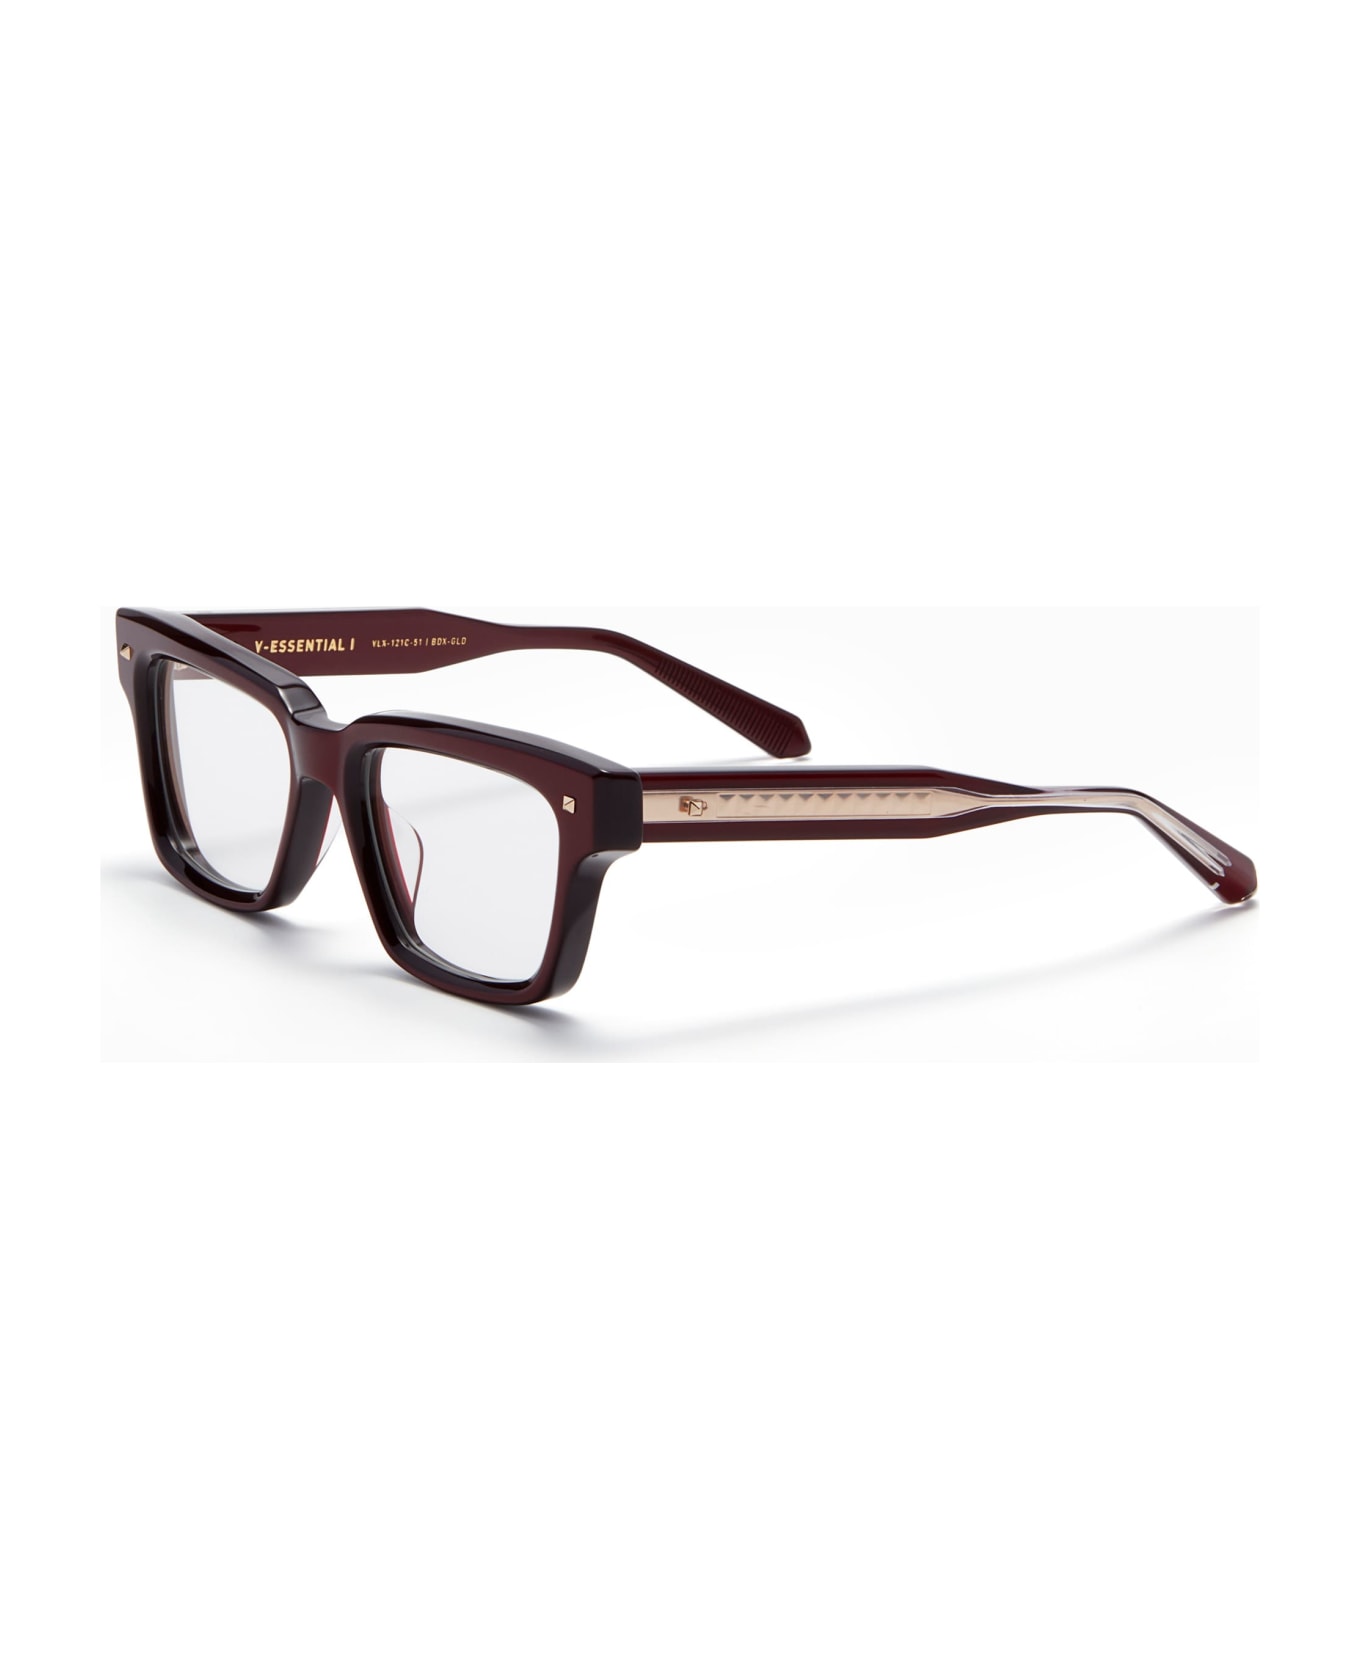 Valentino Eyewear V-essential I - Burgundy Rx Glasses - burgundy